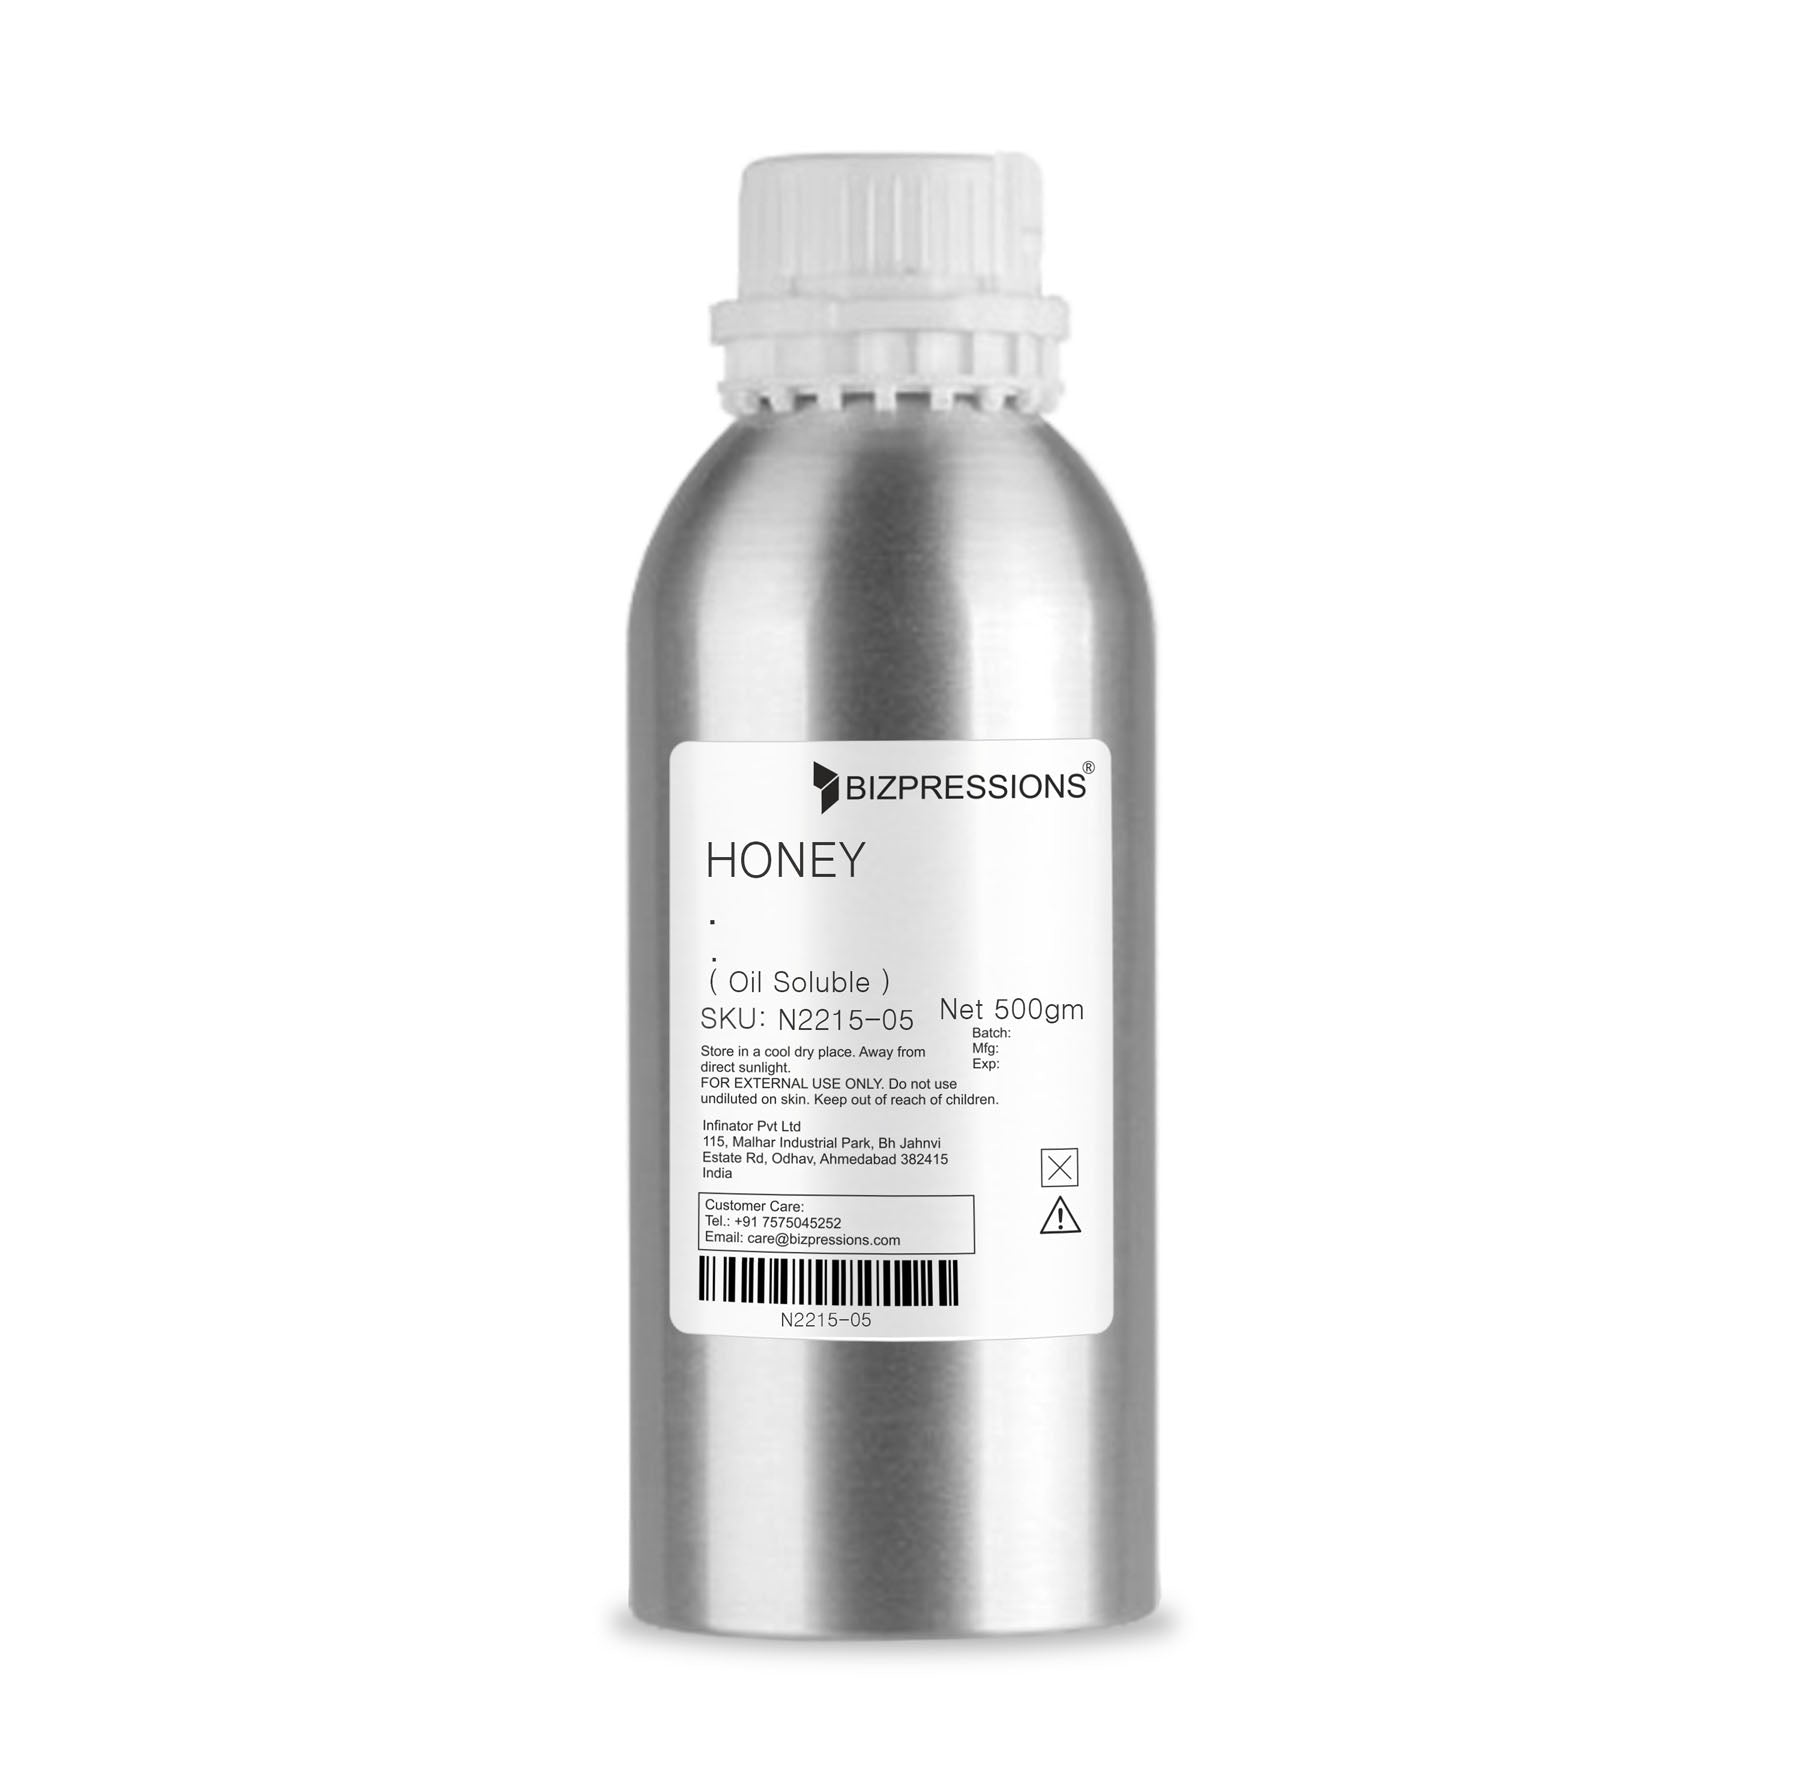 HONEY - Fragrance ( Oil Soluble ) - 500 gm